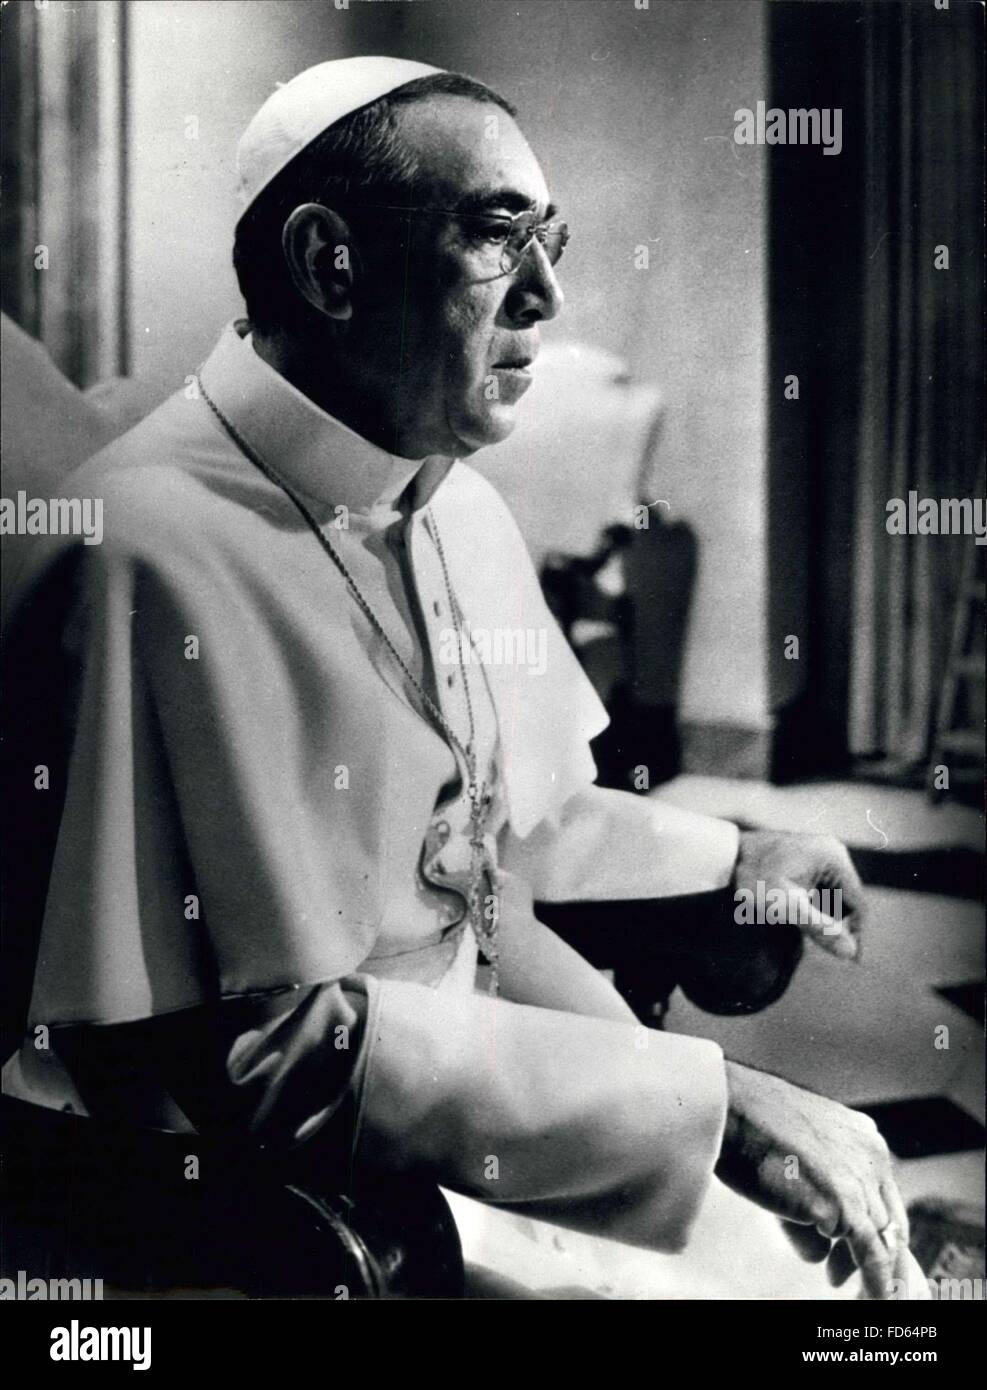 1968 - L'acteur Anthony Homme QuinnThe dans des robes d'un blanc pur : il se trouve sedately portant la robe blanche d'un Pape. L'homme en photo ressemble chaque pouce un chef de l'Église de Rome. Mais le visage est indubitable - acteur Anthony Quinn est habillée pour son rôle dans le film '' les chaussures du pêcheur'', l'histoire d'un archevêque russe qui devient pape. Le film est basé sur Morris West's best-seller. © Keystone Photos USA/ZUMAPRESS.com/Alamy Live News Banque D'Images